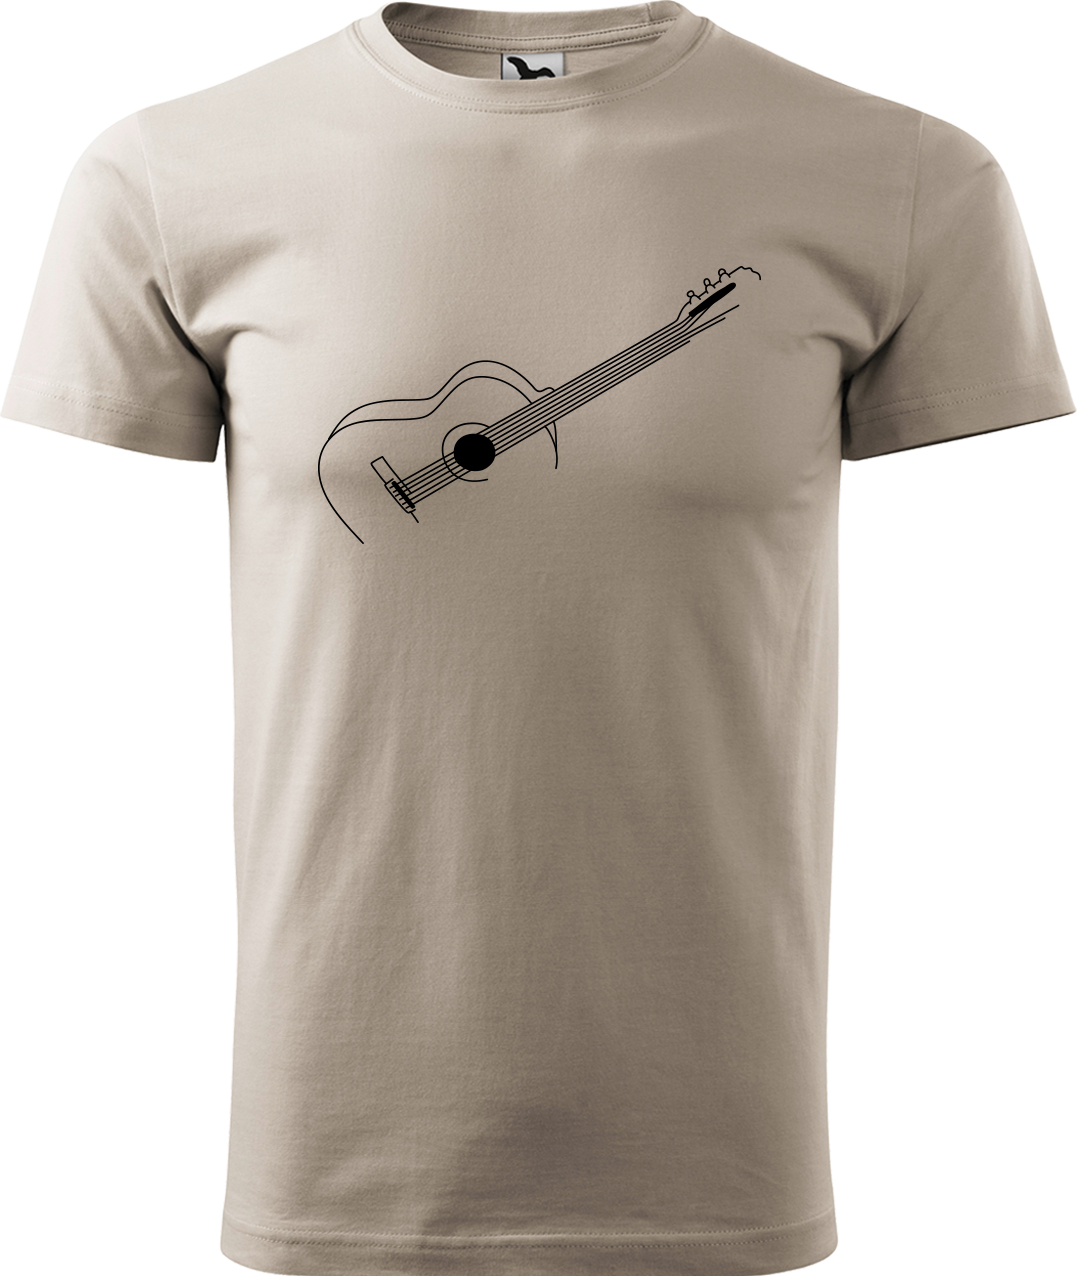 Pánské tričko s kytarou - Stylizovaná kytara Velikost: XL, Barva: Ledově šedá (51), Střih: pánský